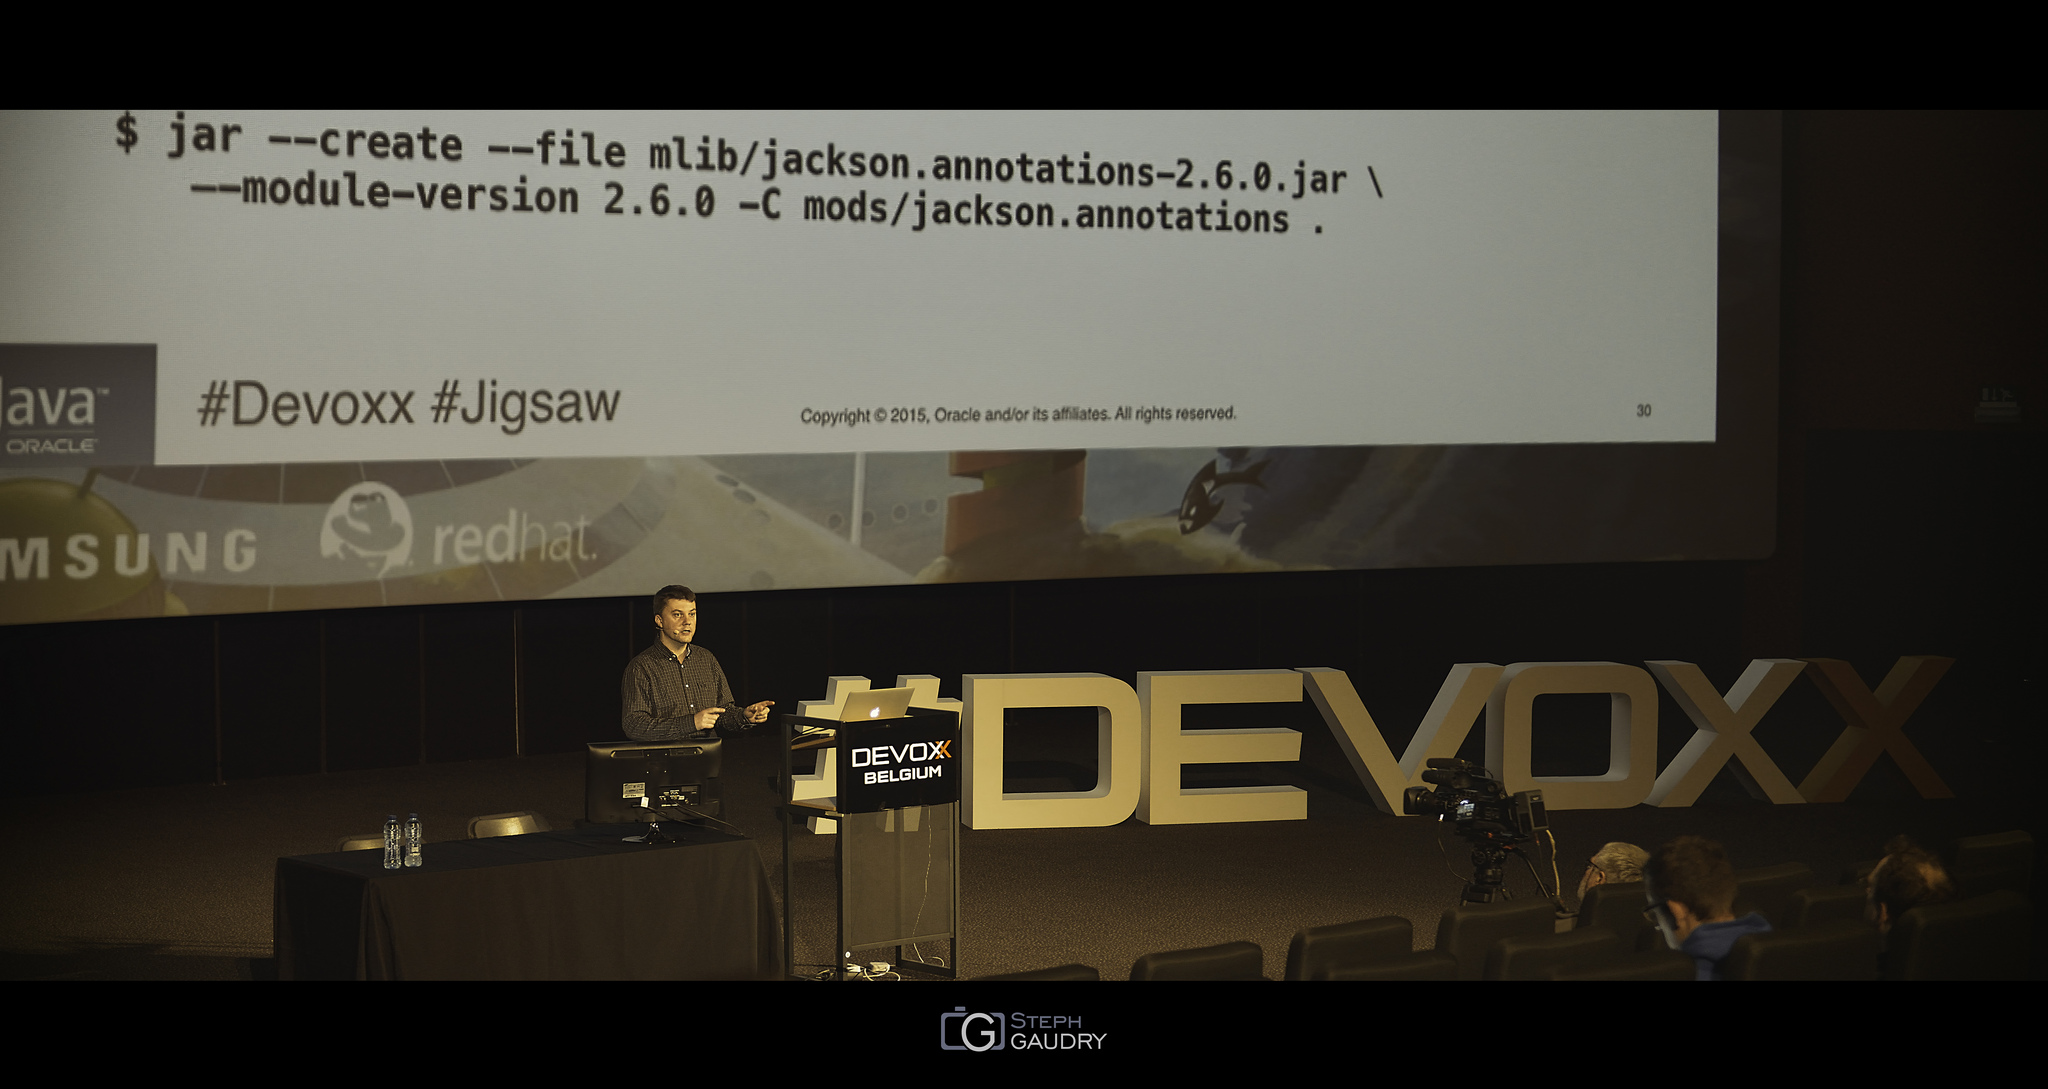 Devoxx2015 - Modular Development with JDK 9 [Klicken Sie hier, um die Diashow zu starten]